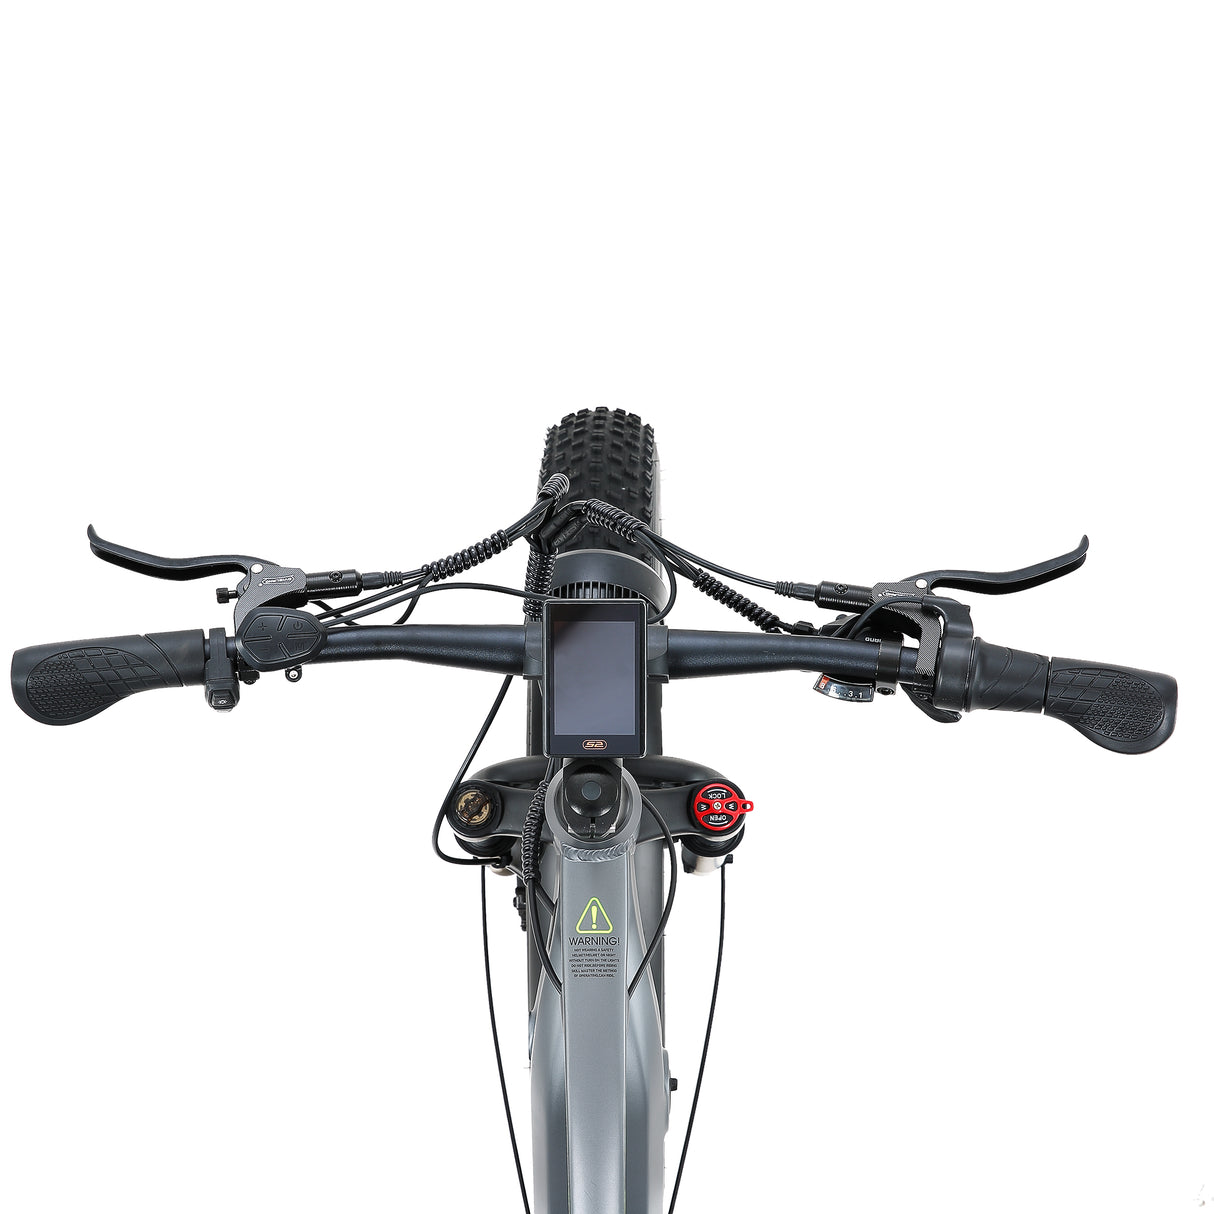 Bicicletta elettrica CEAYA RX80